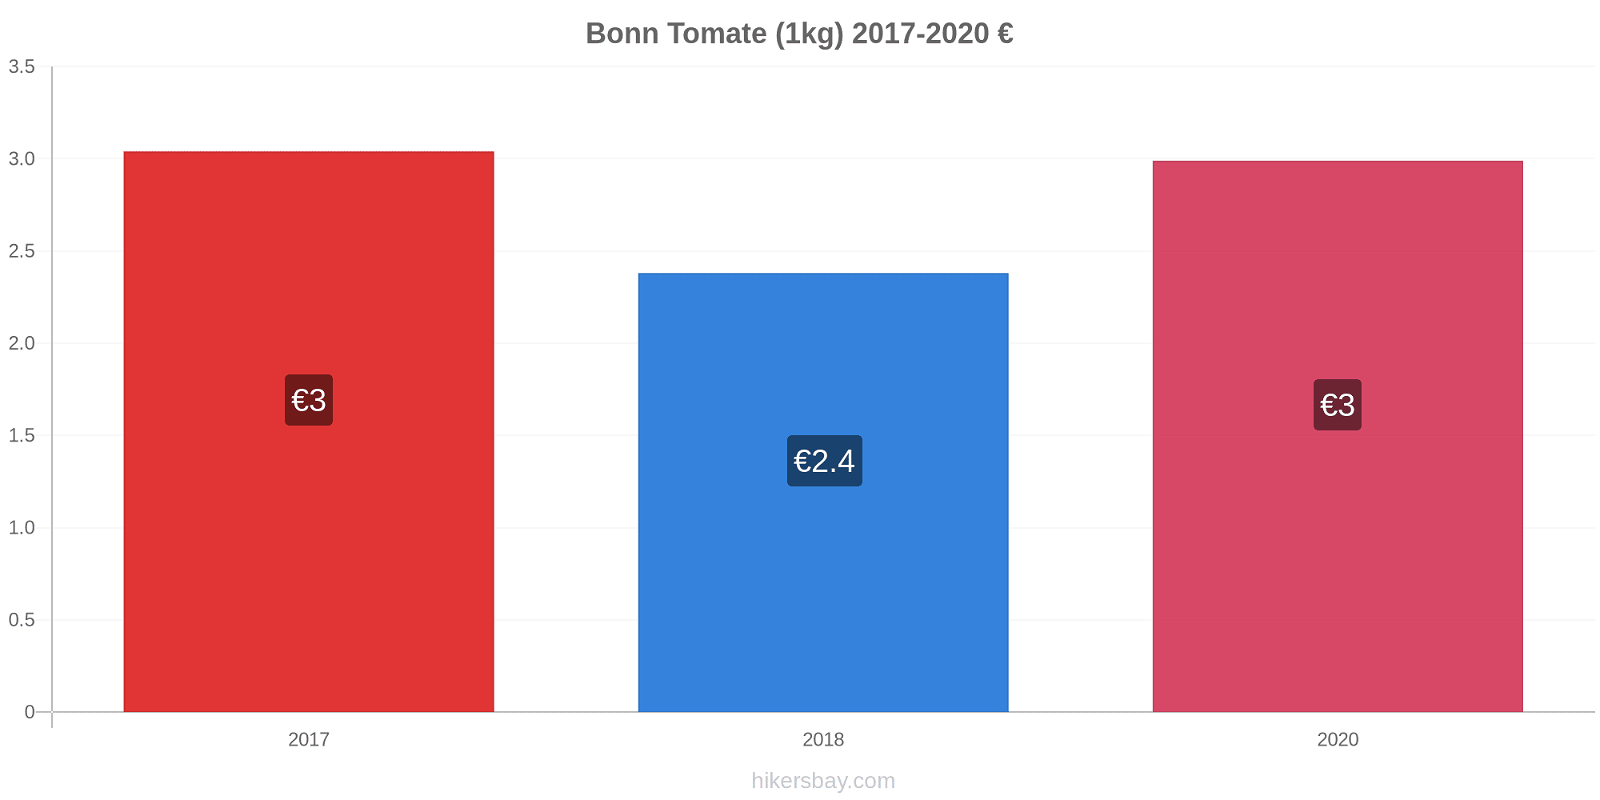 Bonn modificări de preț Tomate (1kg) hikersbay.com